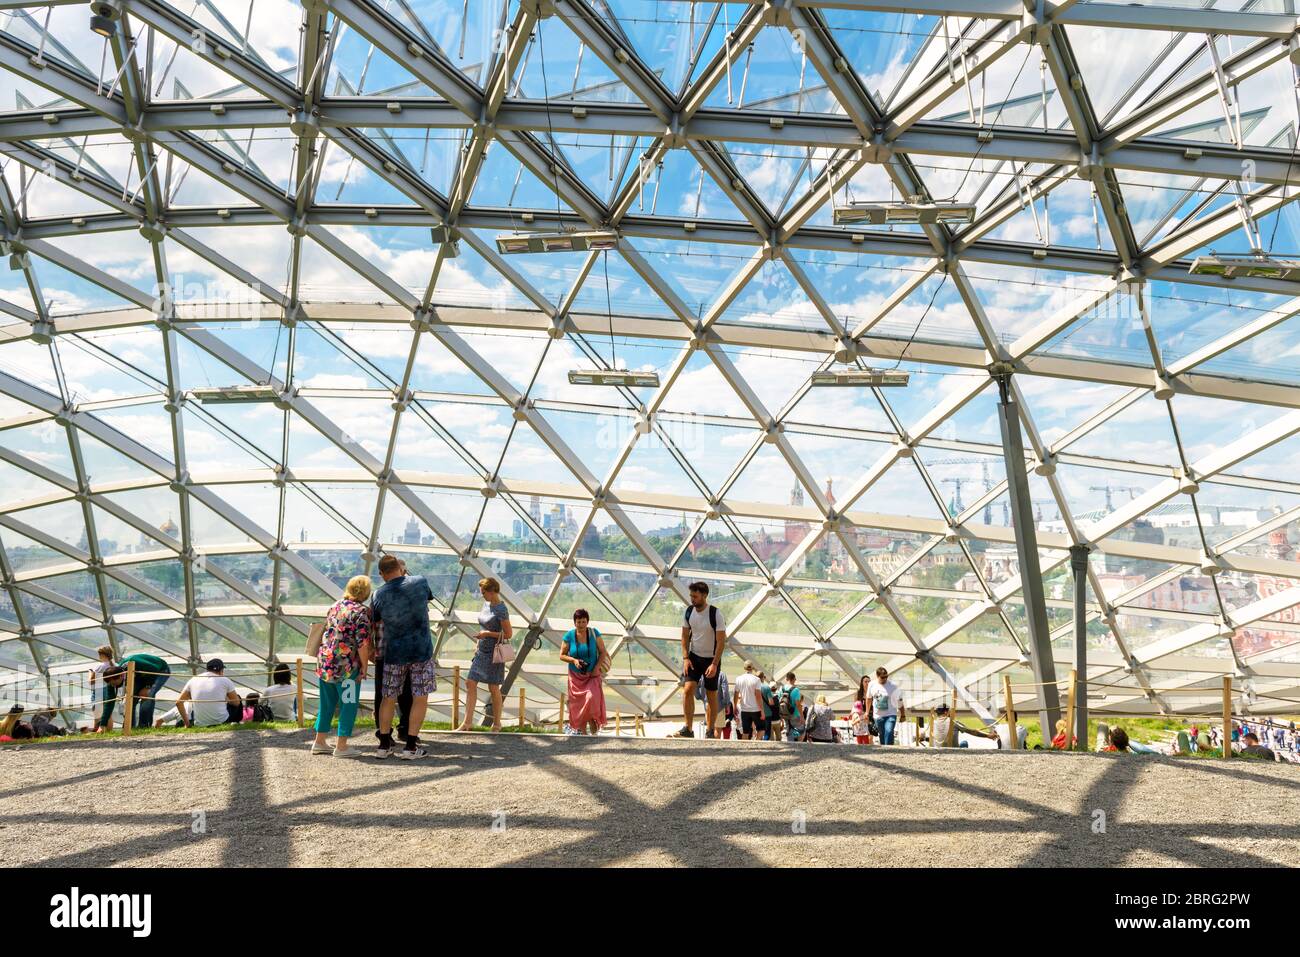 Moskau - 17. Juni 2018: Die Menschen besuchen ein modernes Amphitheater mit Glaskuppel im Zaryadye Park in der Nähe von Moskau Kreml im Sommer, Russland. Saryadye ist einer von Stockfoto